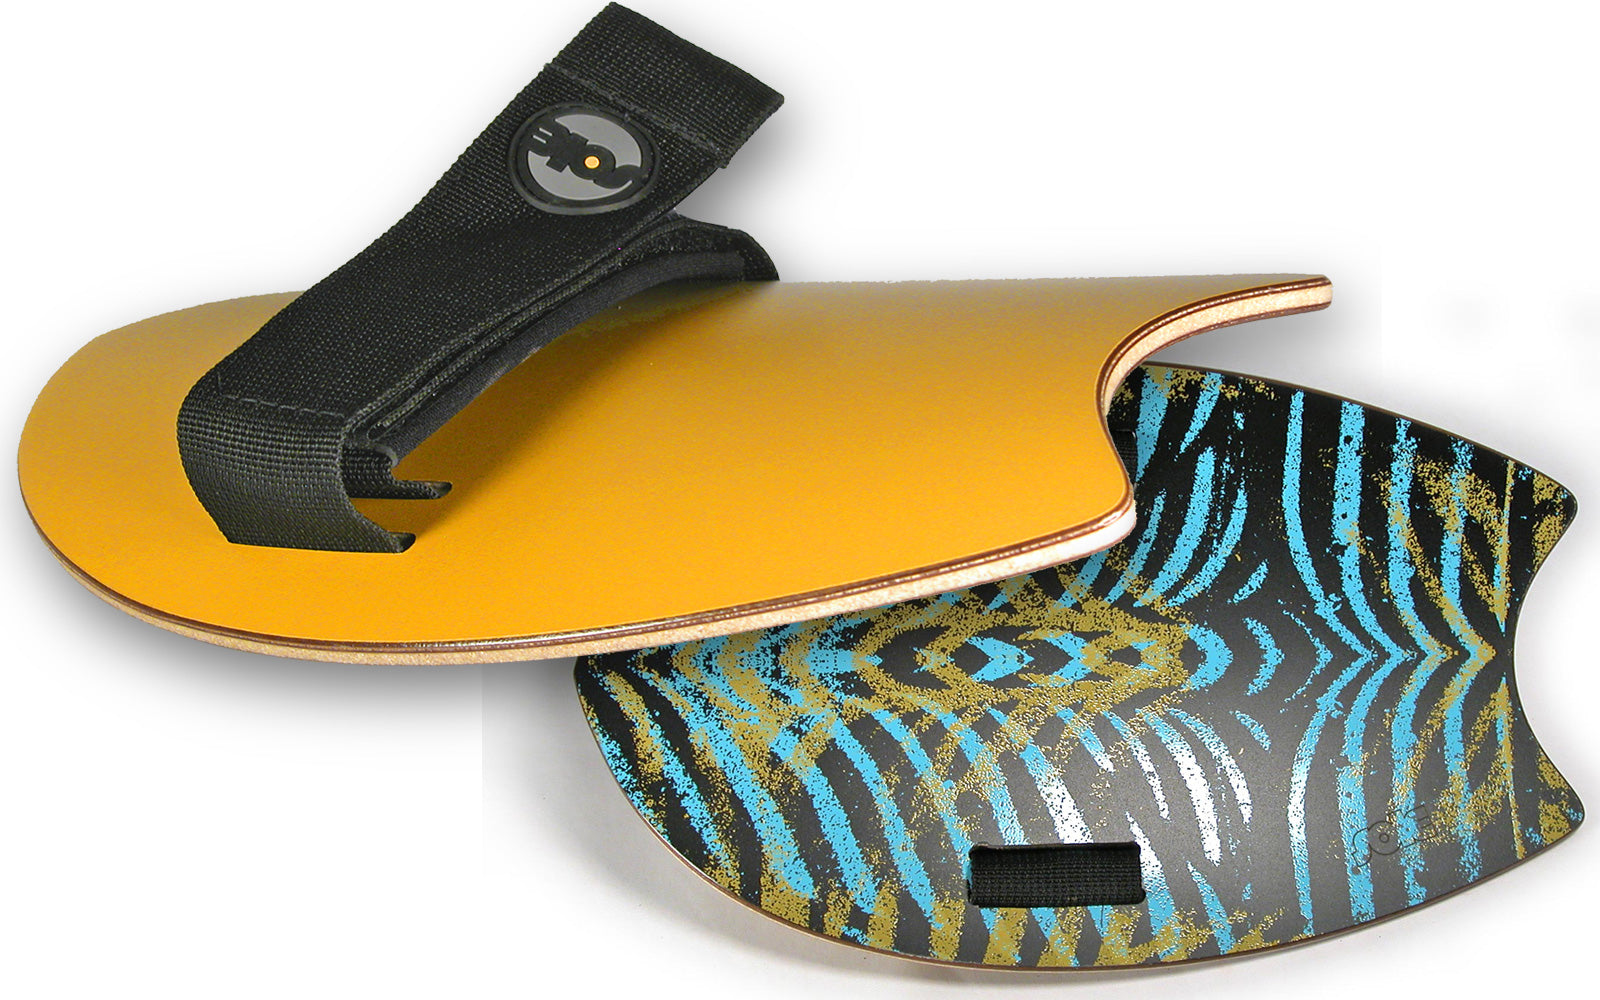 Sole Handplanes. Premium, High Performance Bodysurfing Handboards ...